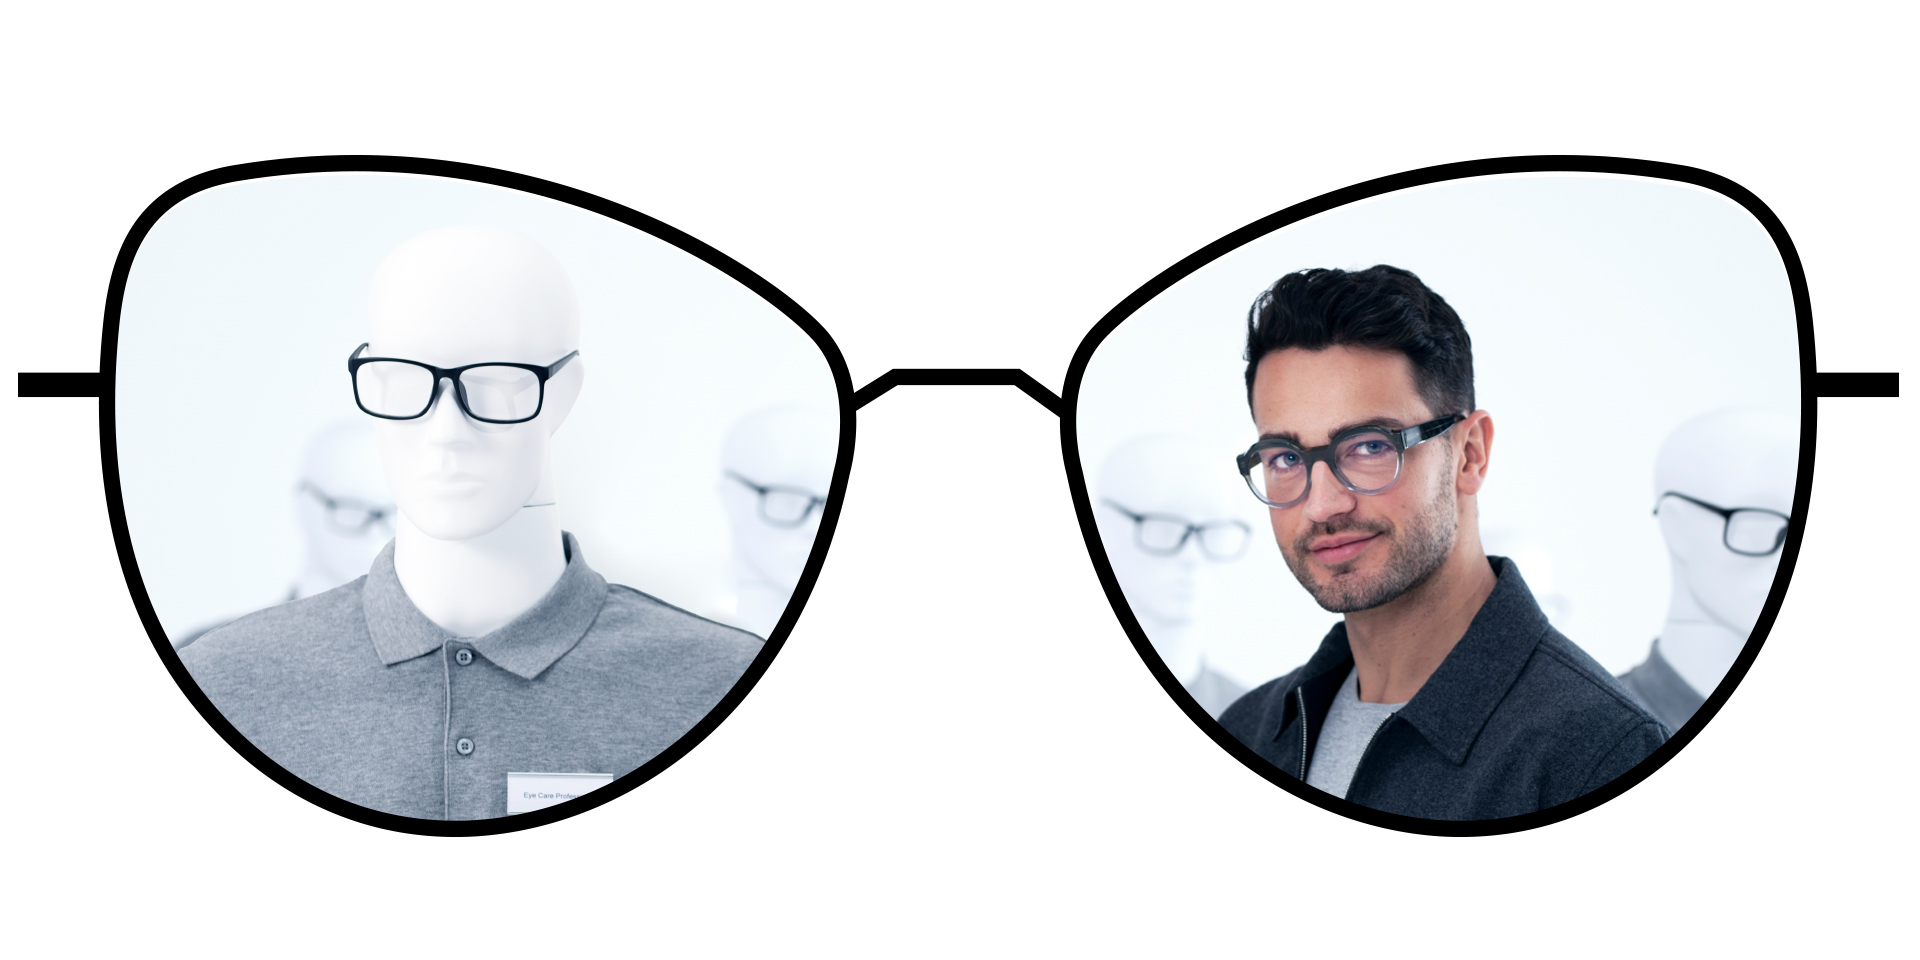 Vergleichende Darstellung von Brillen mit Standard-Einstärkengläsern und verschwommener Sicht und ZEISS ClearView Einstärkengläsern mit großen, klaren, scharfen Sichtzonen.